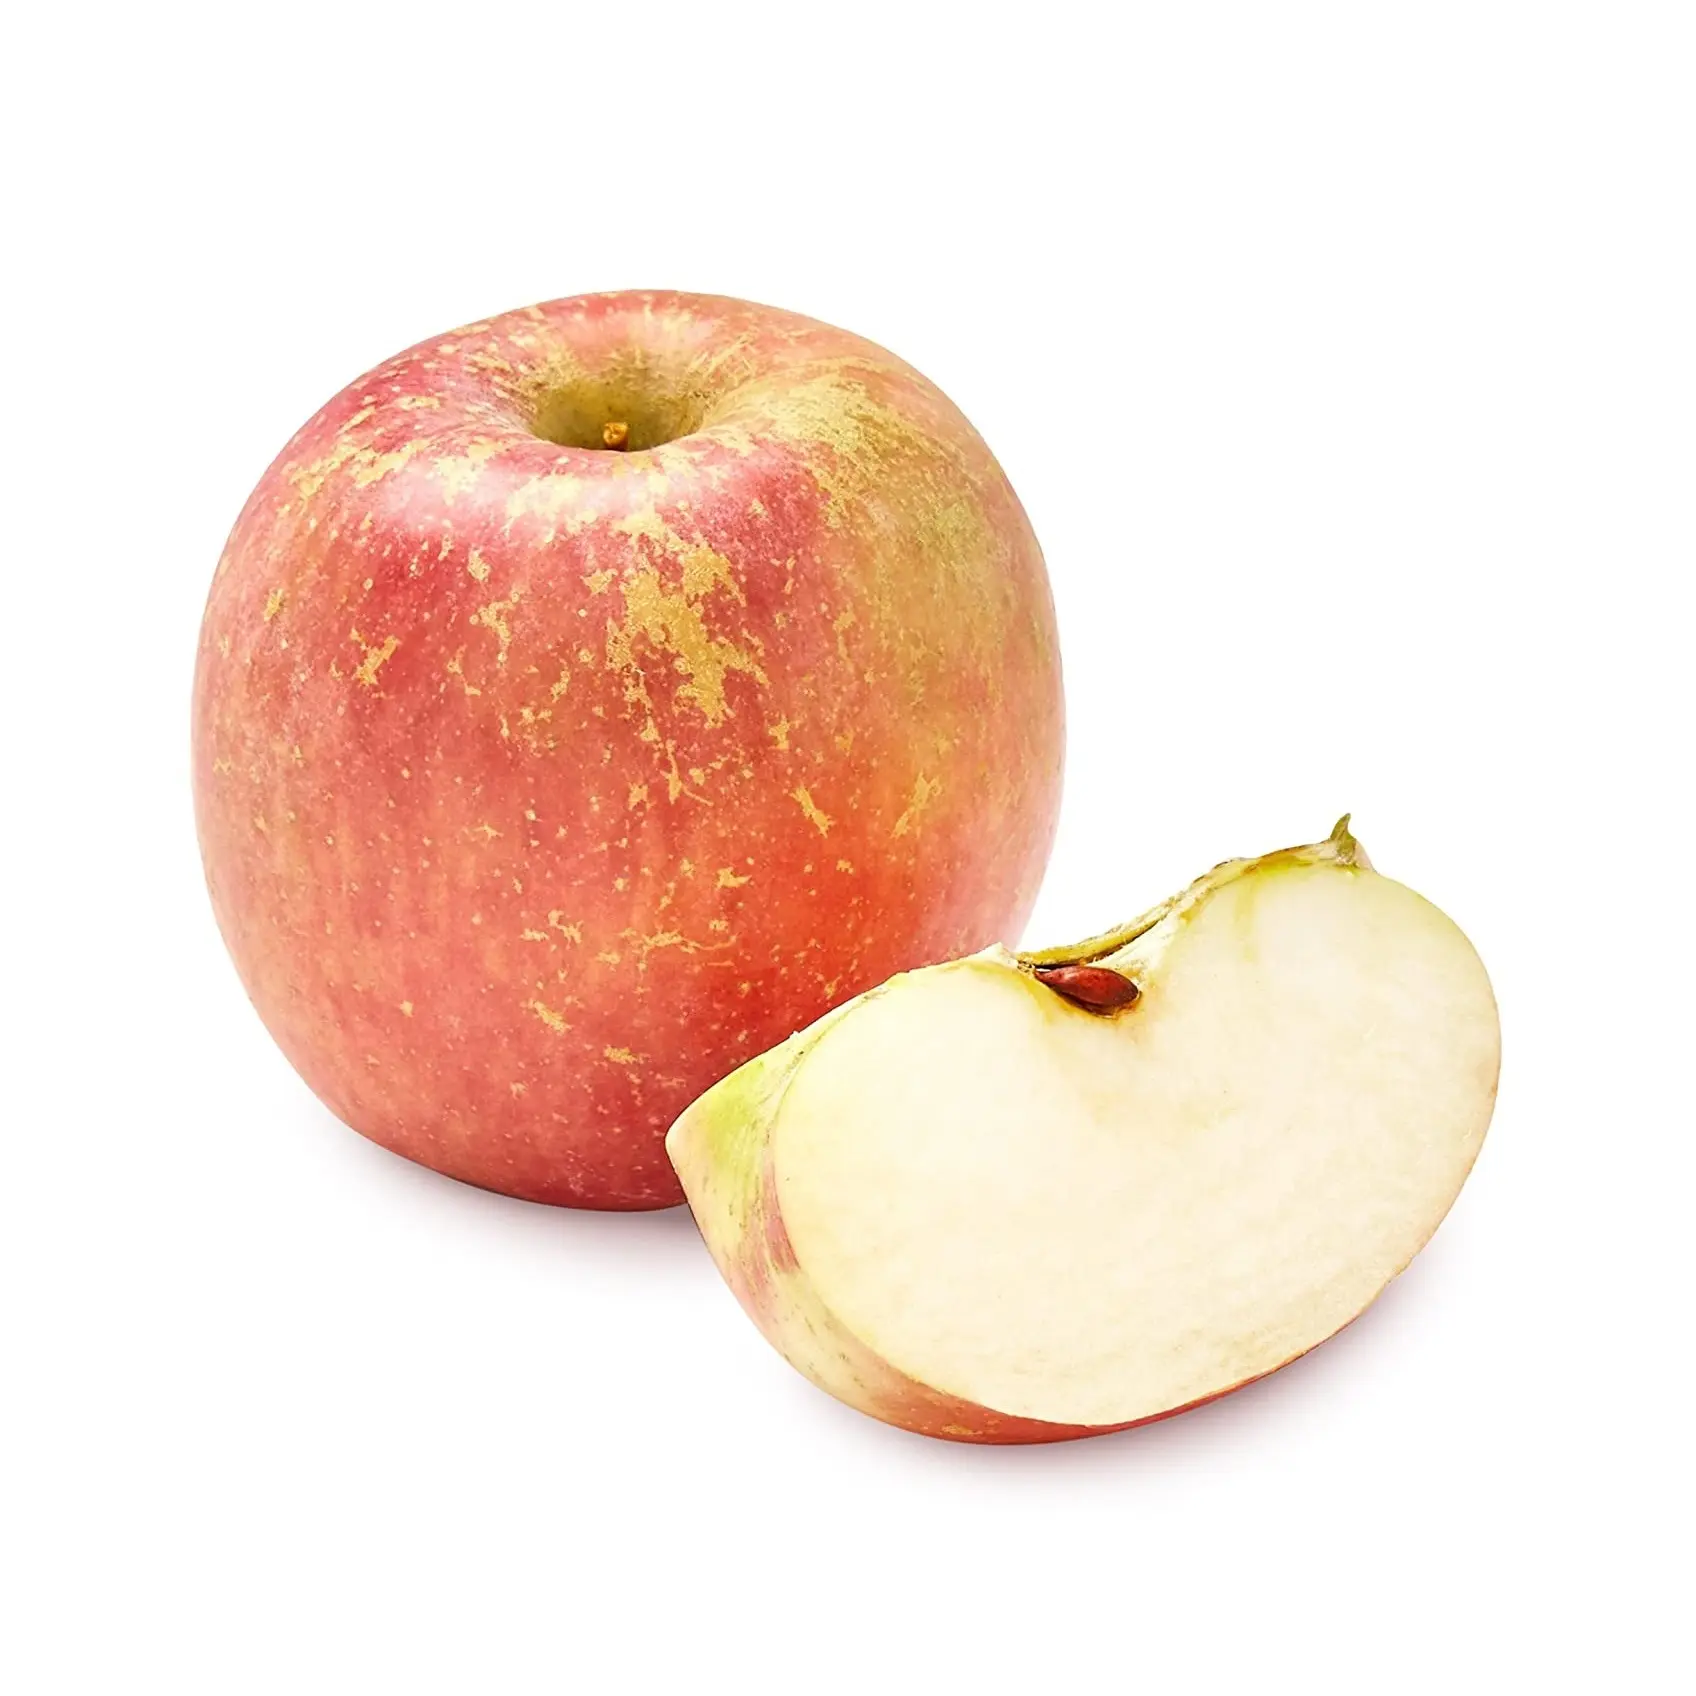 オンラインでの購入/注文最高品質の甘い新鮮なリンゴ新鮮な富士赤リンゴ新鮮な果物最高品質の最高価格の輸出